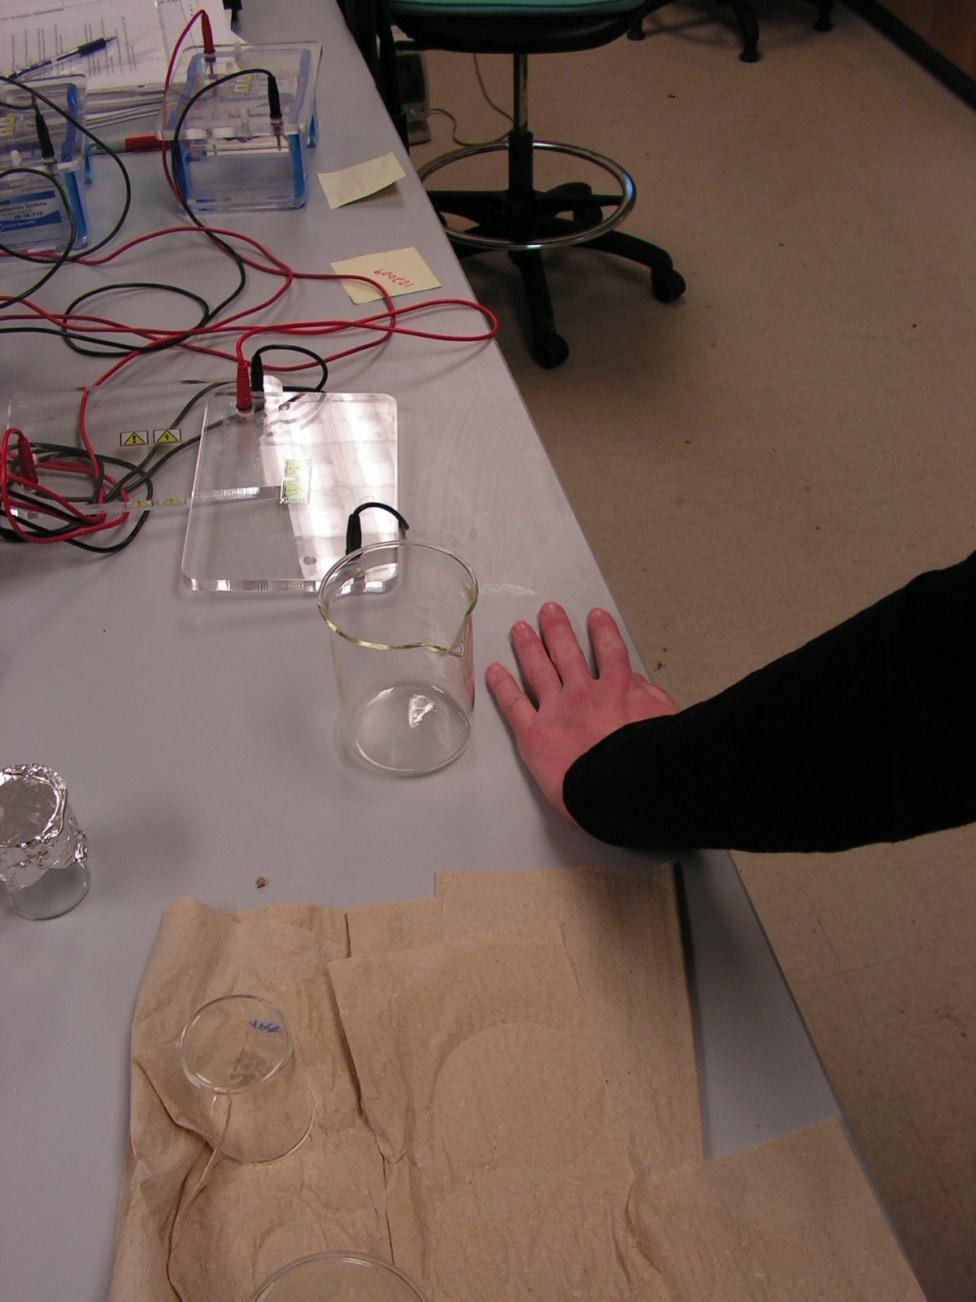 3. When pouring liquids into glassware, make sure the container you are